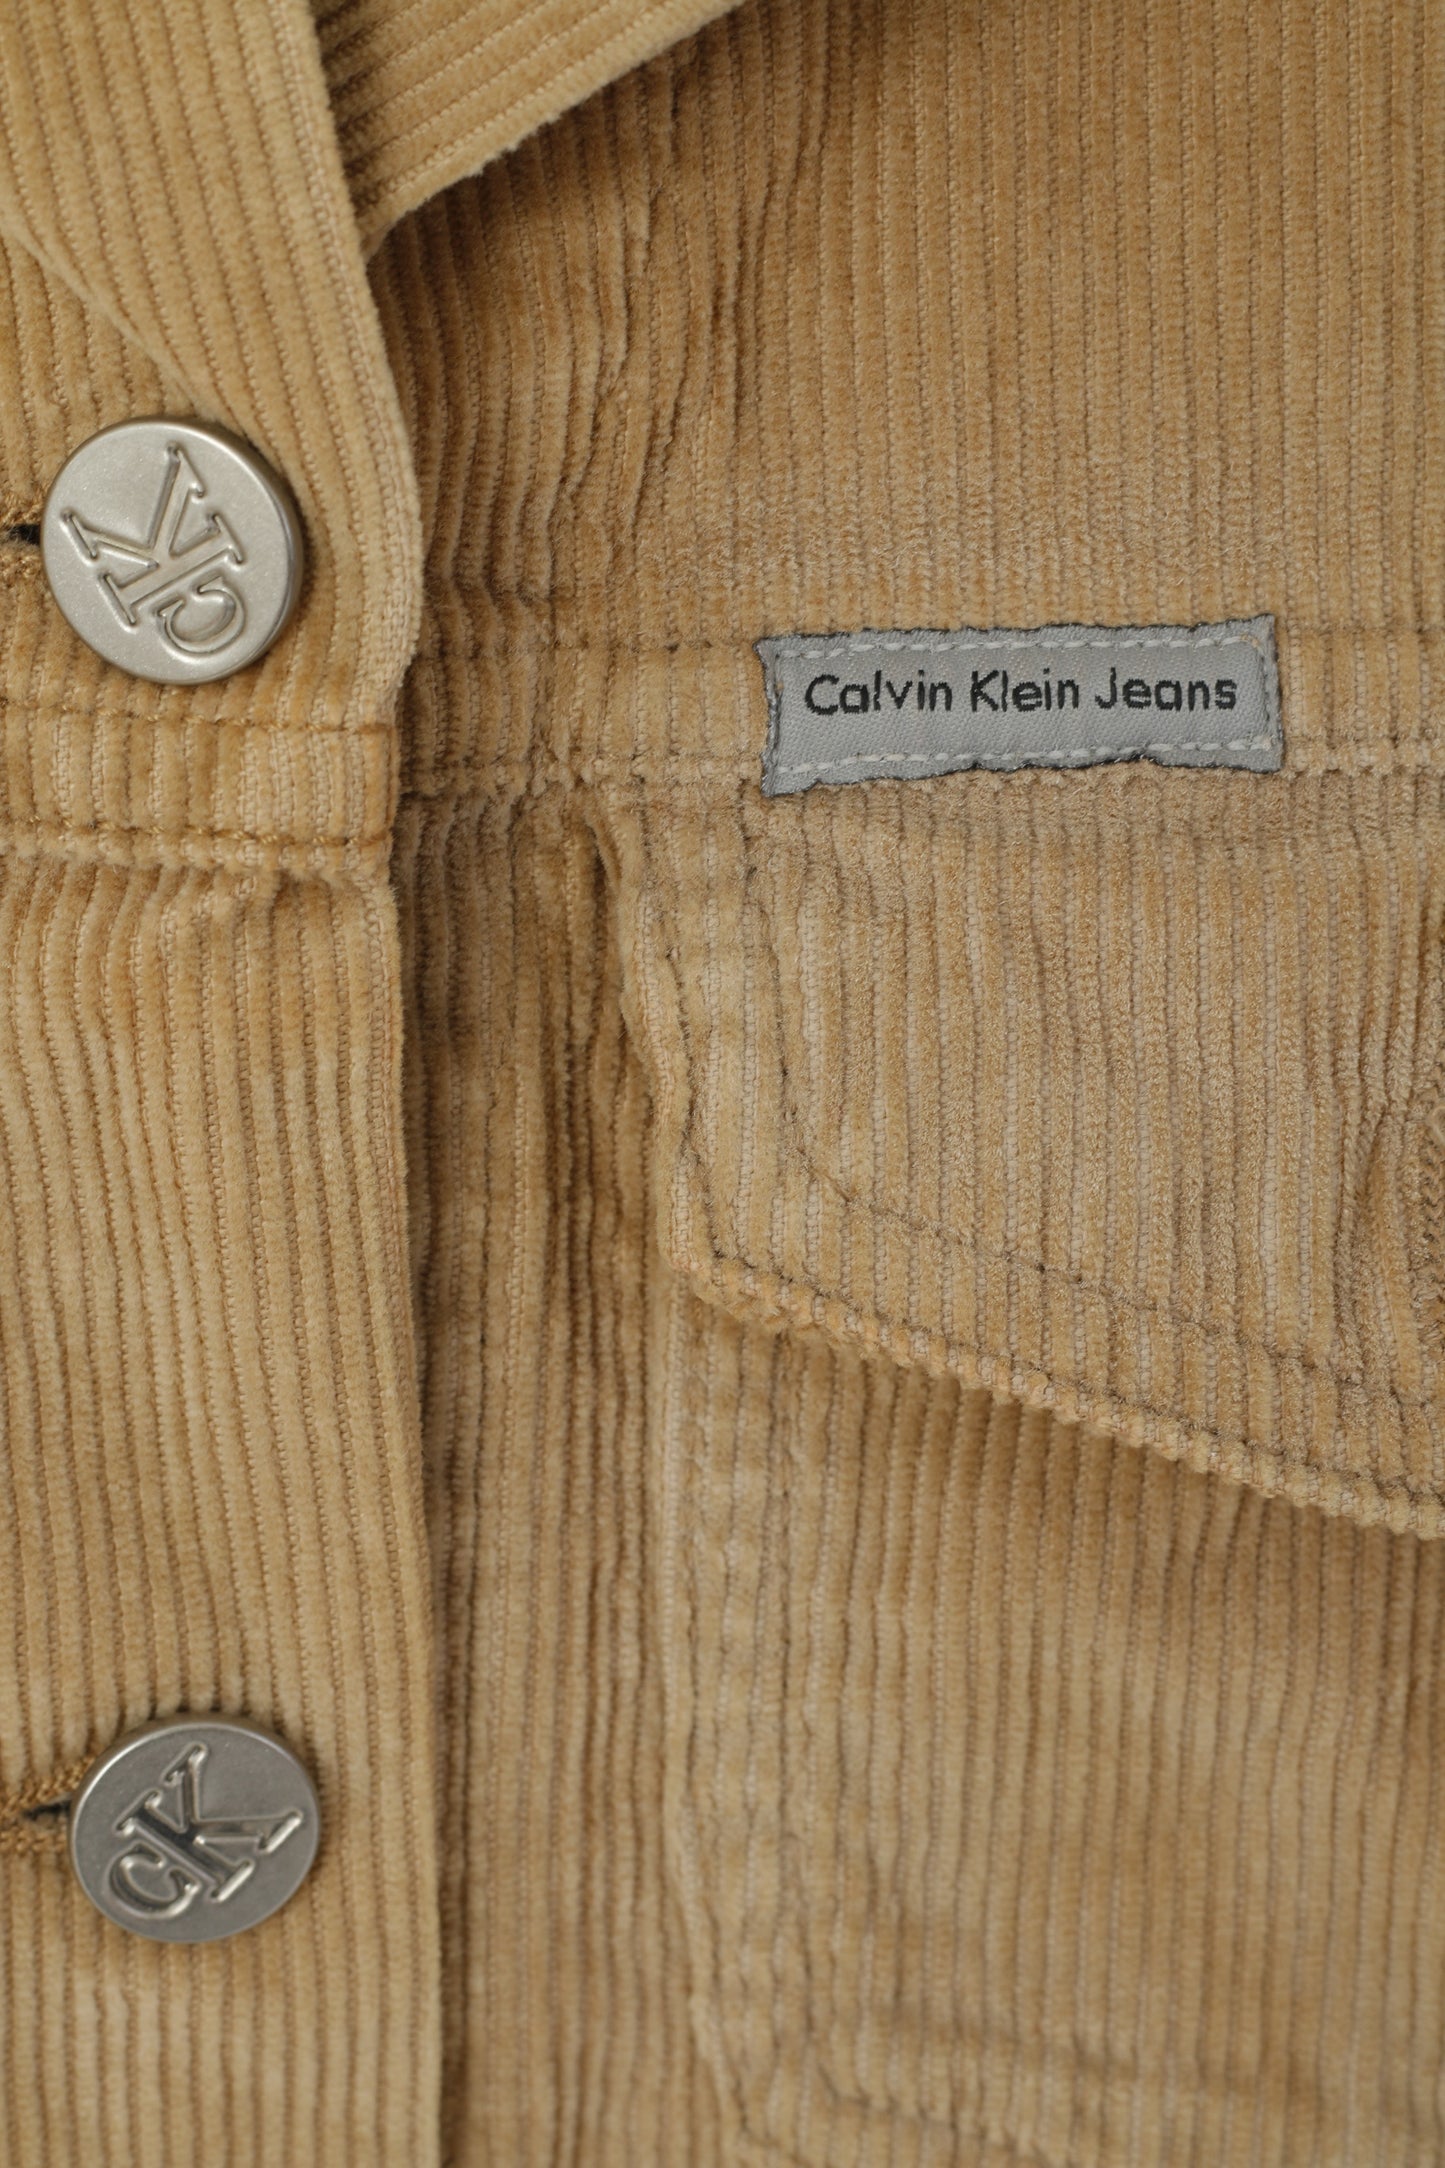 Calvin Klein Jeans Women S Denim Shirt Beige Corduroy Cotton Vintage Western Top